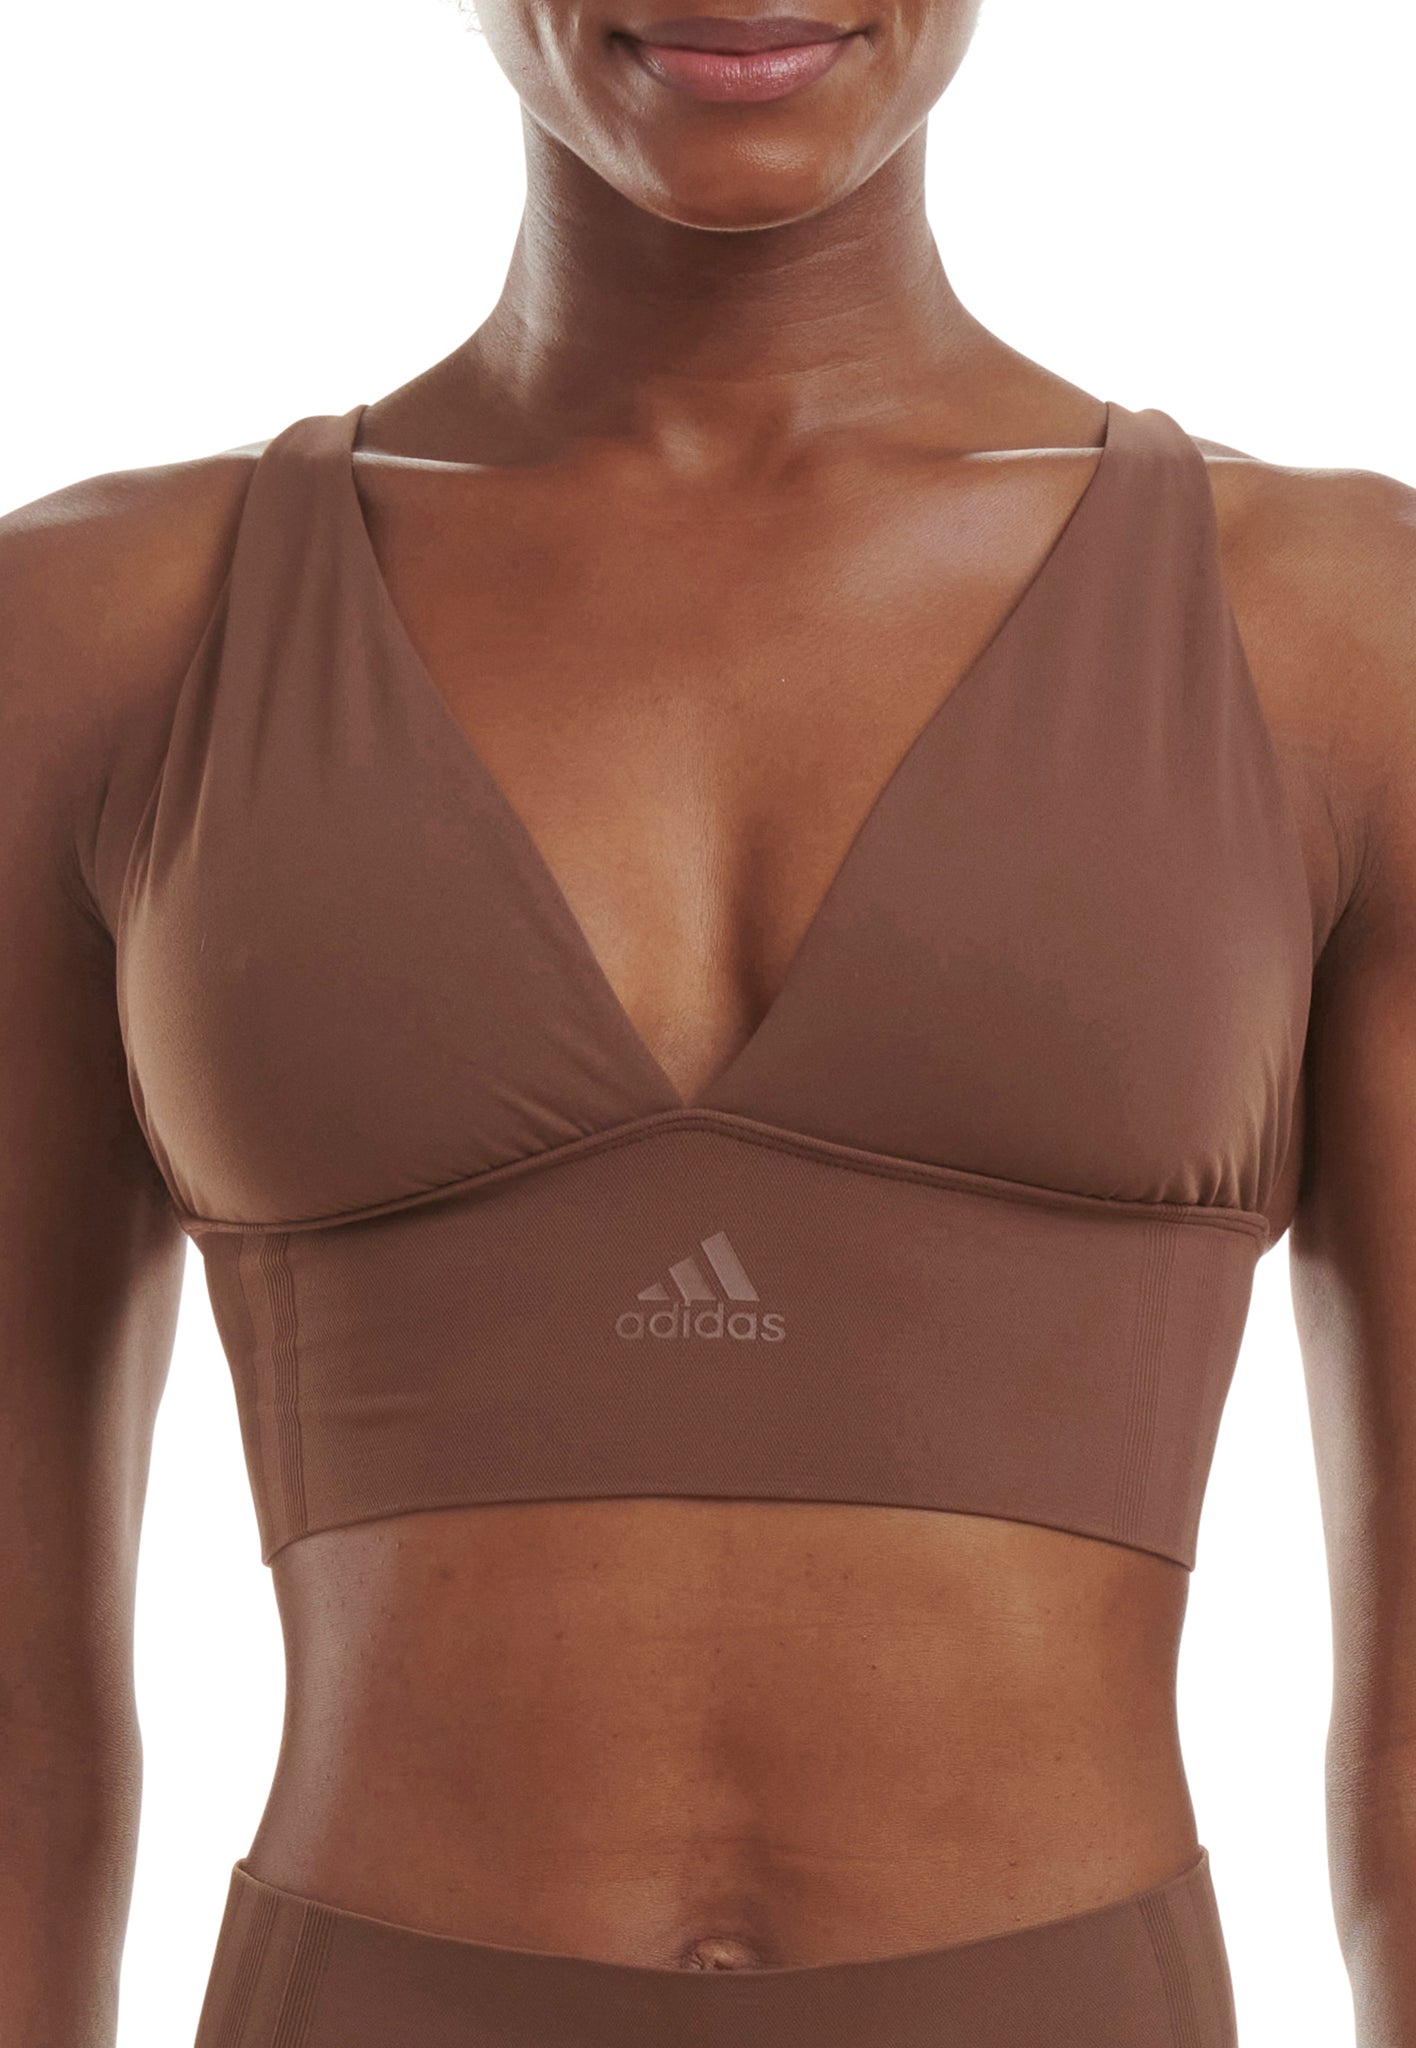 Brassière Adidas Believe This Noire - Brassiere de Sport pour Femme Adidas  - PromoTennis